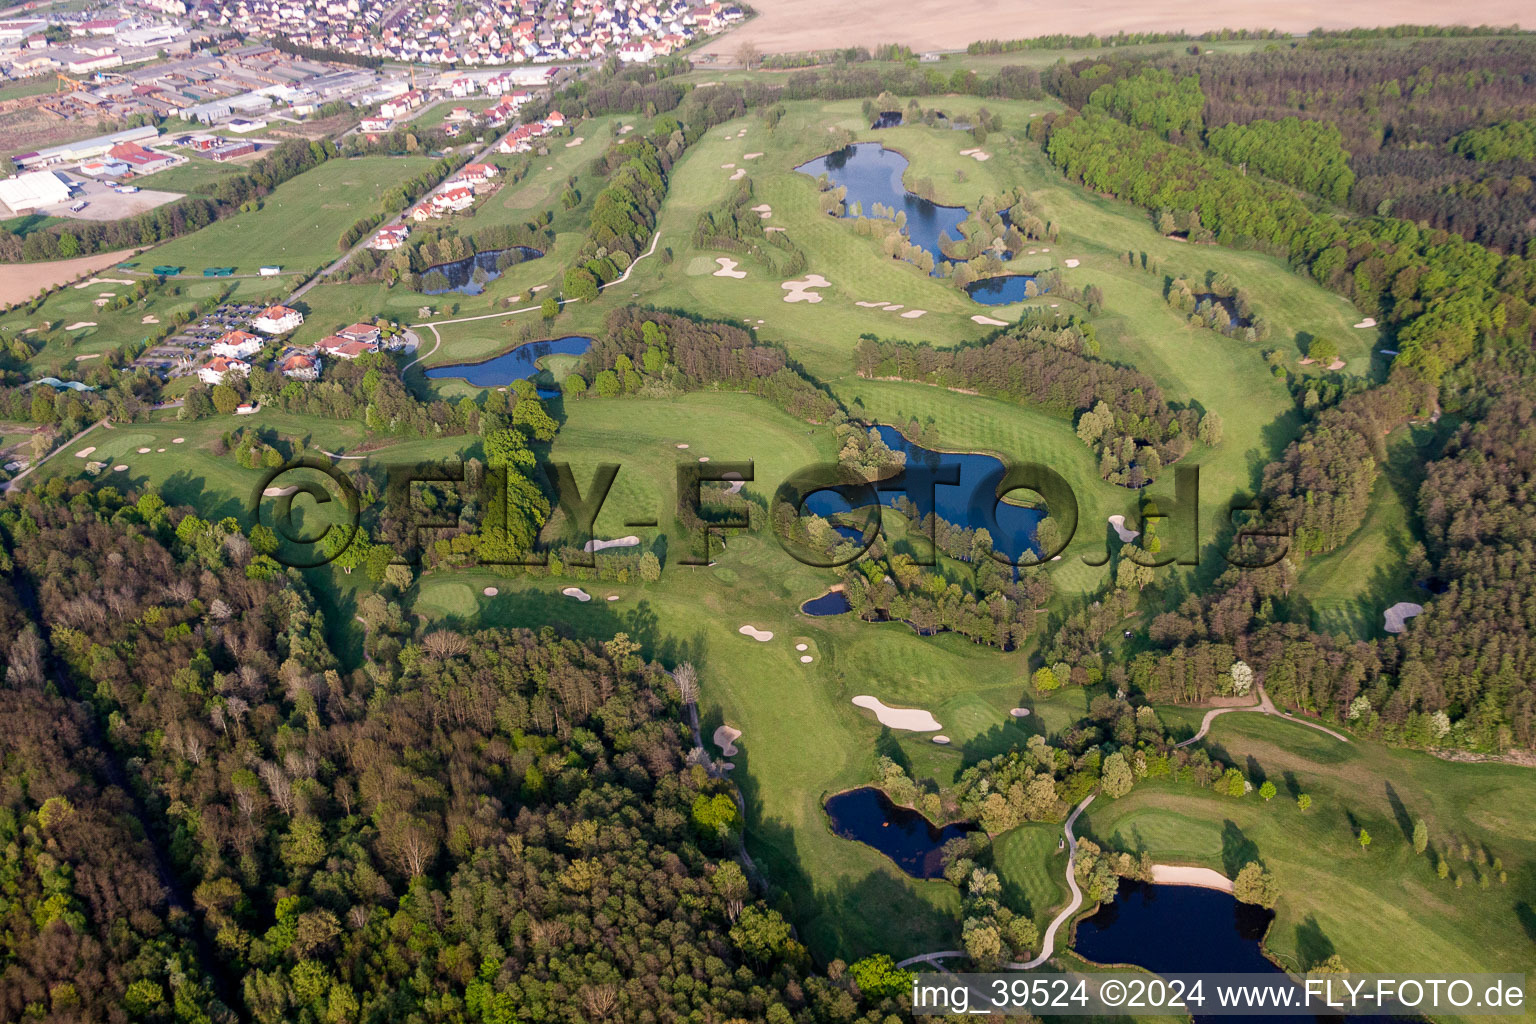 Schrägluftbild von Gelände des Golfplatz Golfclub Soufflenheim Baden-Baden in Soufflenheim in Grand Est im Bundesland Bas-Rhin, Frankreich